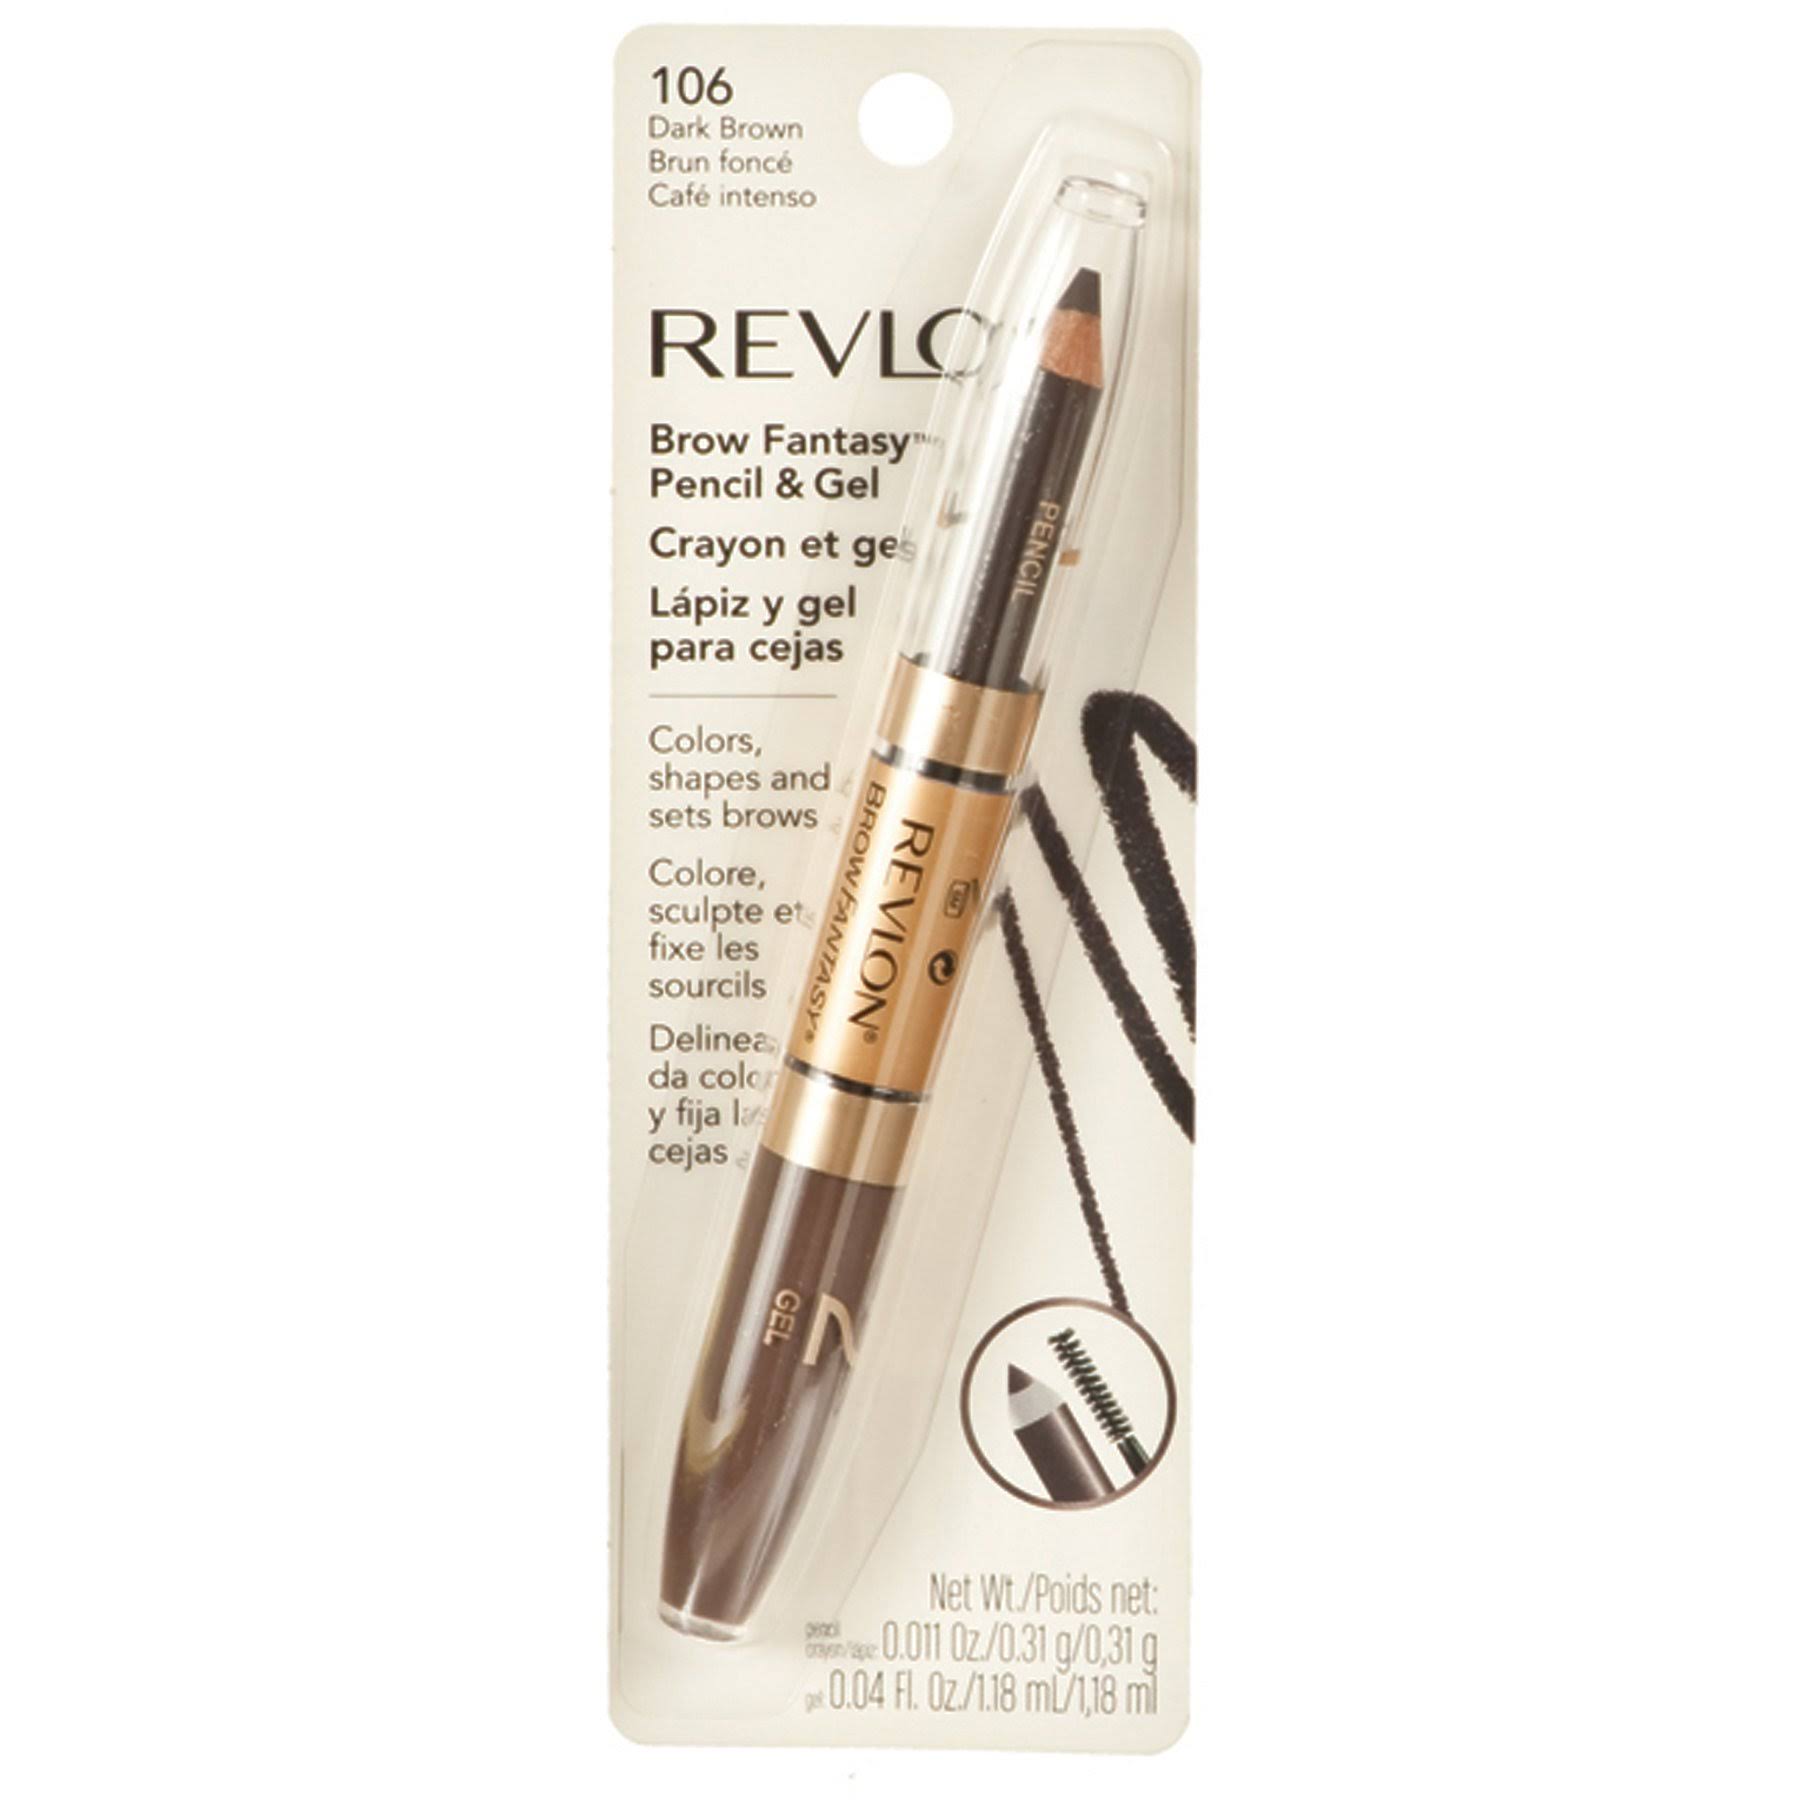 Revlon Brow Fantasy Pencil & Gel - 106 Dark Brown